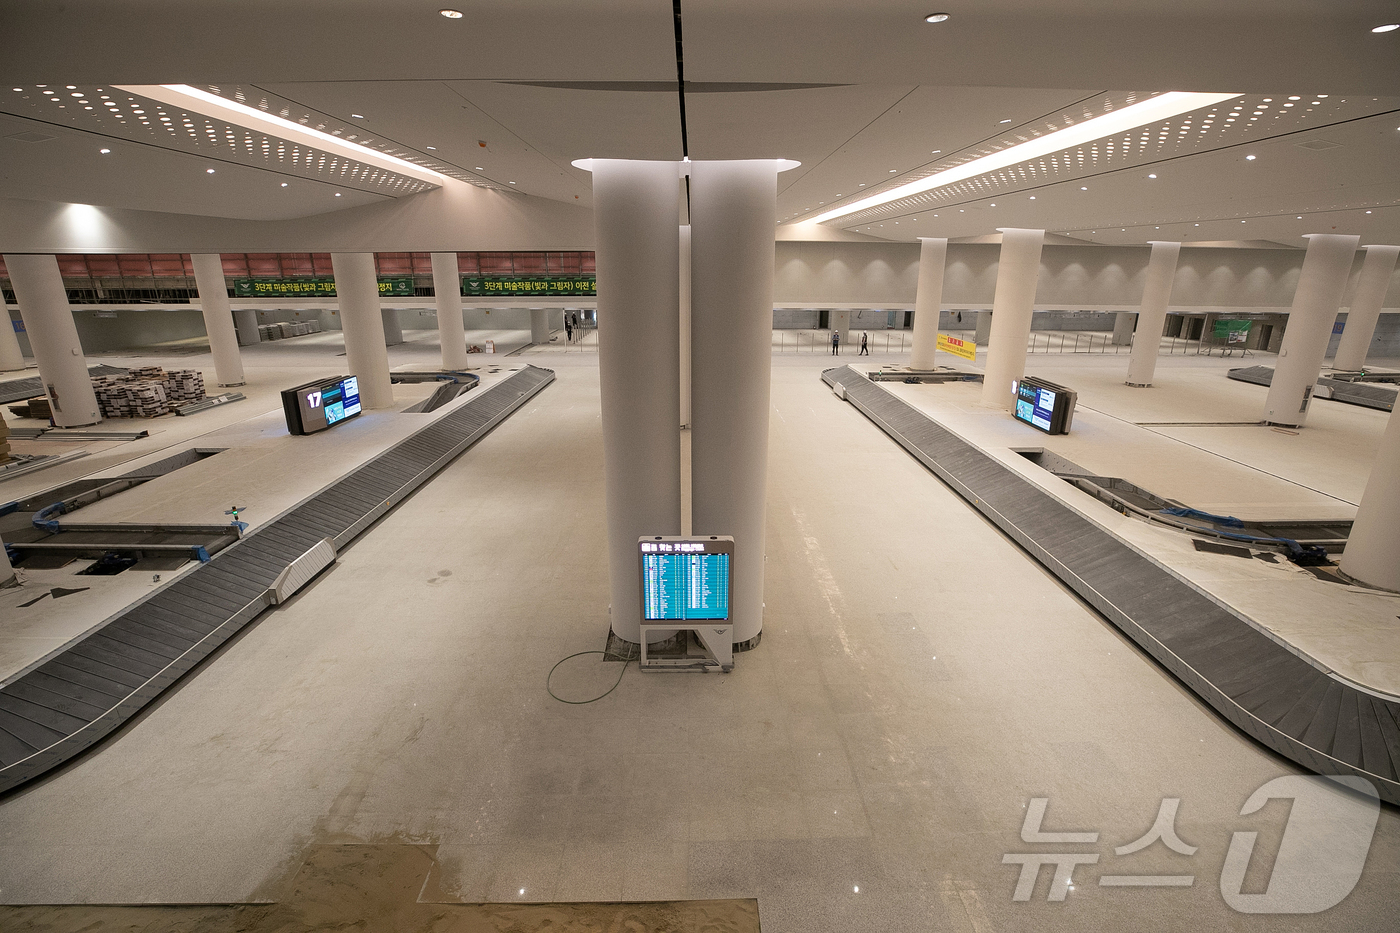 (인천공항=뉴스1) 이승배 기자 = 지난 28일 인천국제공항 2터미널에서 열린 인천공항 4단계 건설현장 언론 공개 행사에서 수하물 찾는 곳이 공개되고 있다.제2여객터미널 확장을 주 …